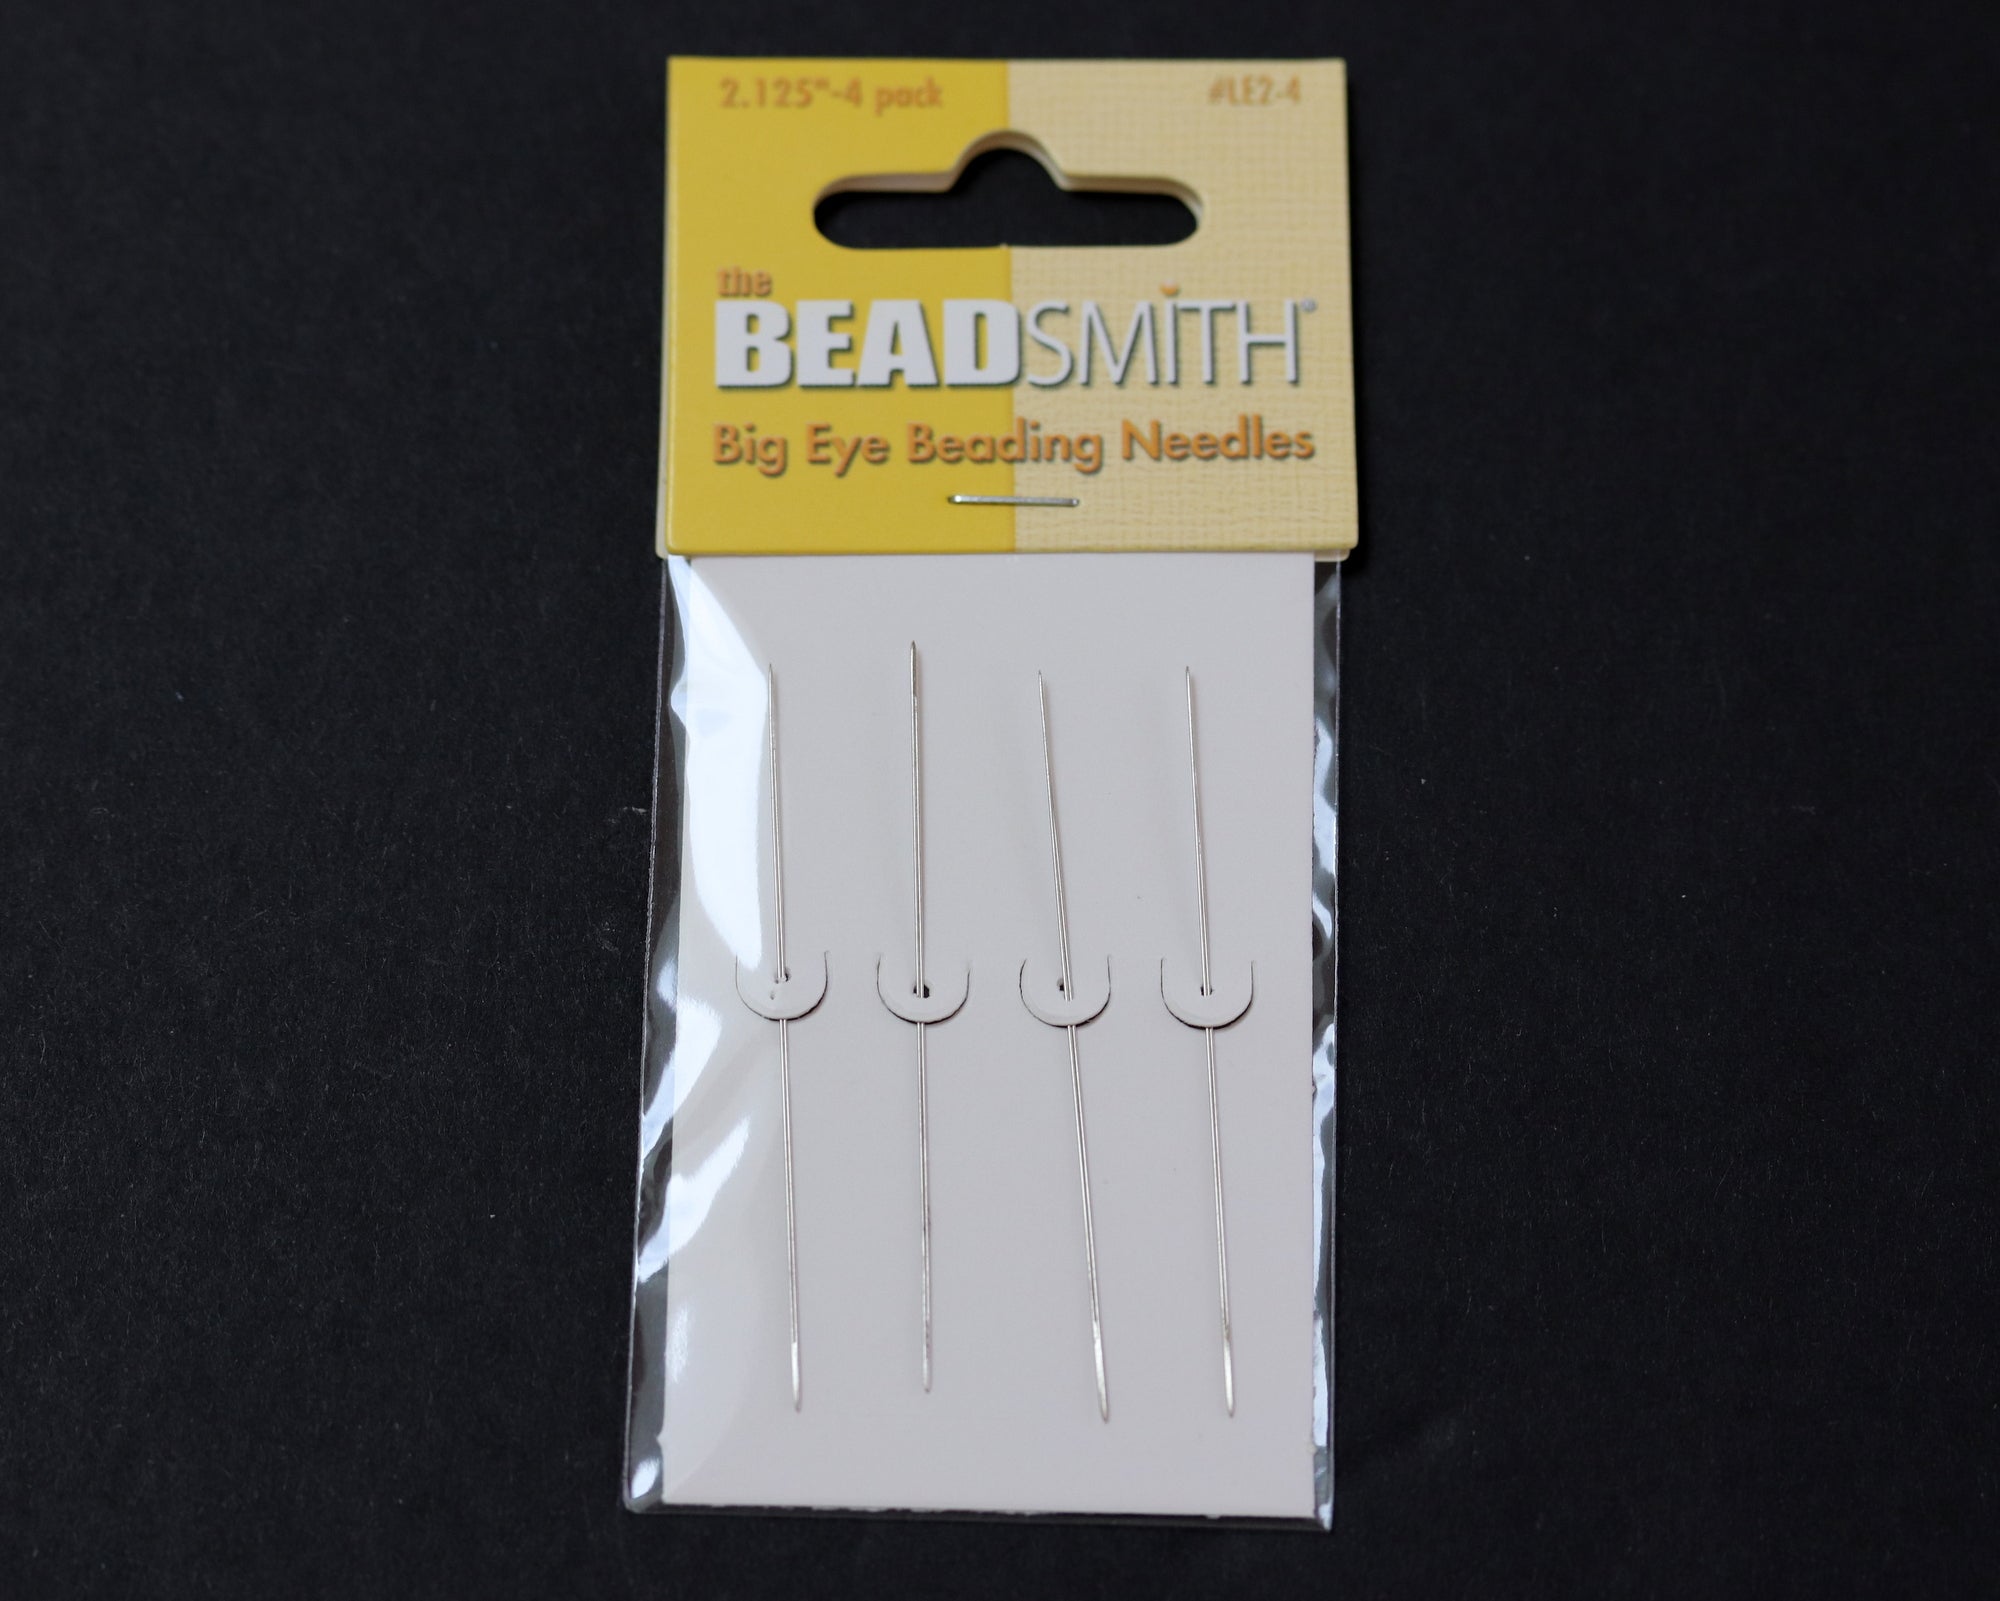 Beadsmith Big Eye Beading Needles - Four Pack size 2.125 inch